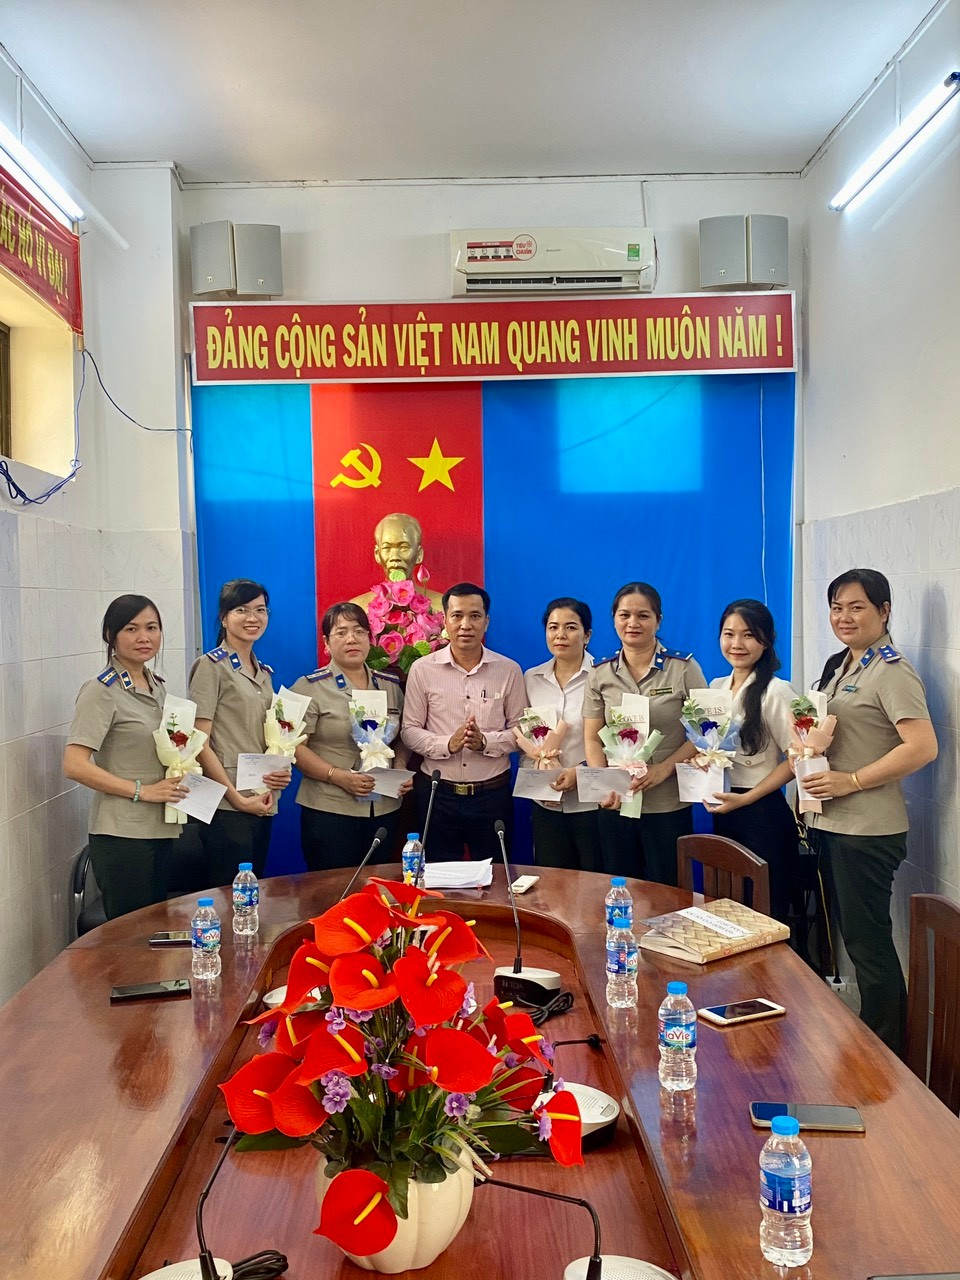 Chi cục THADS huyện Tân Phước tổ chức họp mặt Kỷ niệm 93 năm Ngày thành lập Hội Liên hiệp phụ nữ Việt Nam (20/10/1930-20/10/2023).